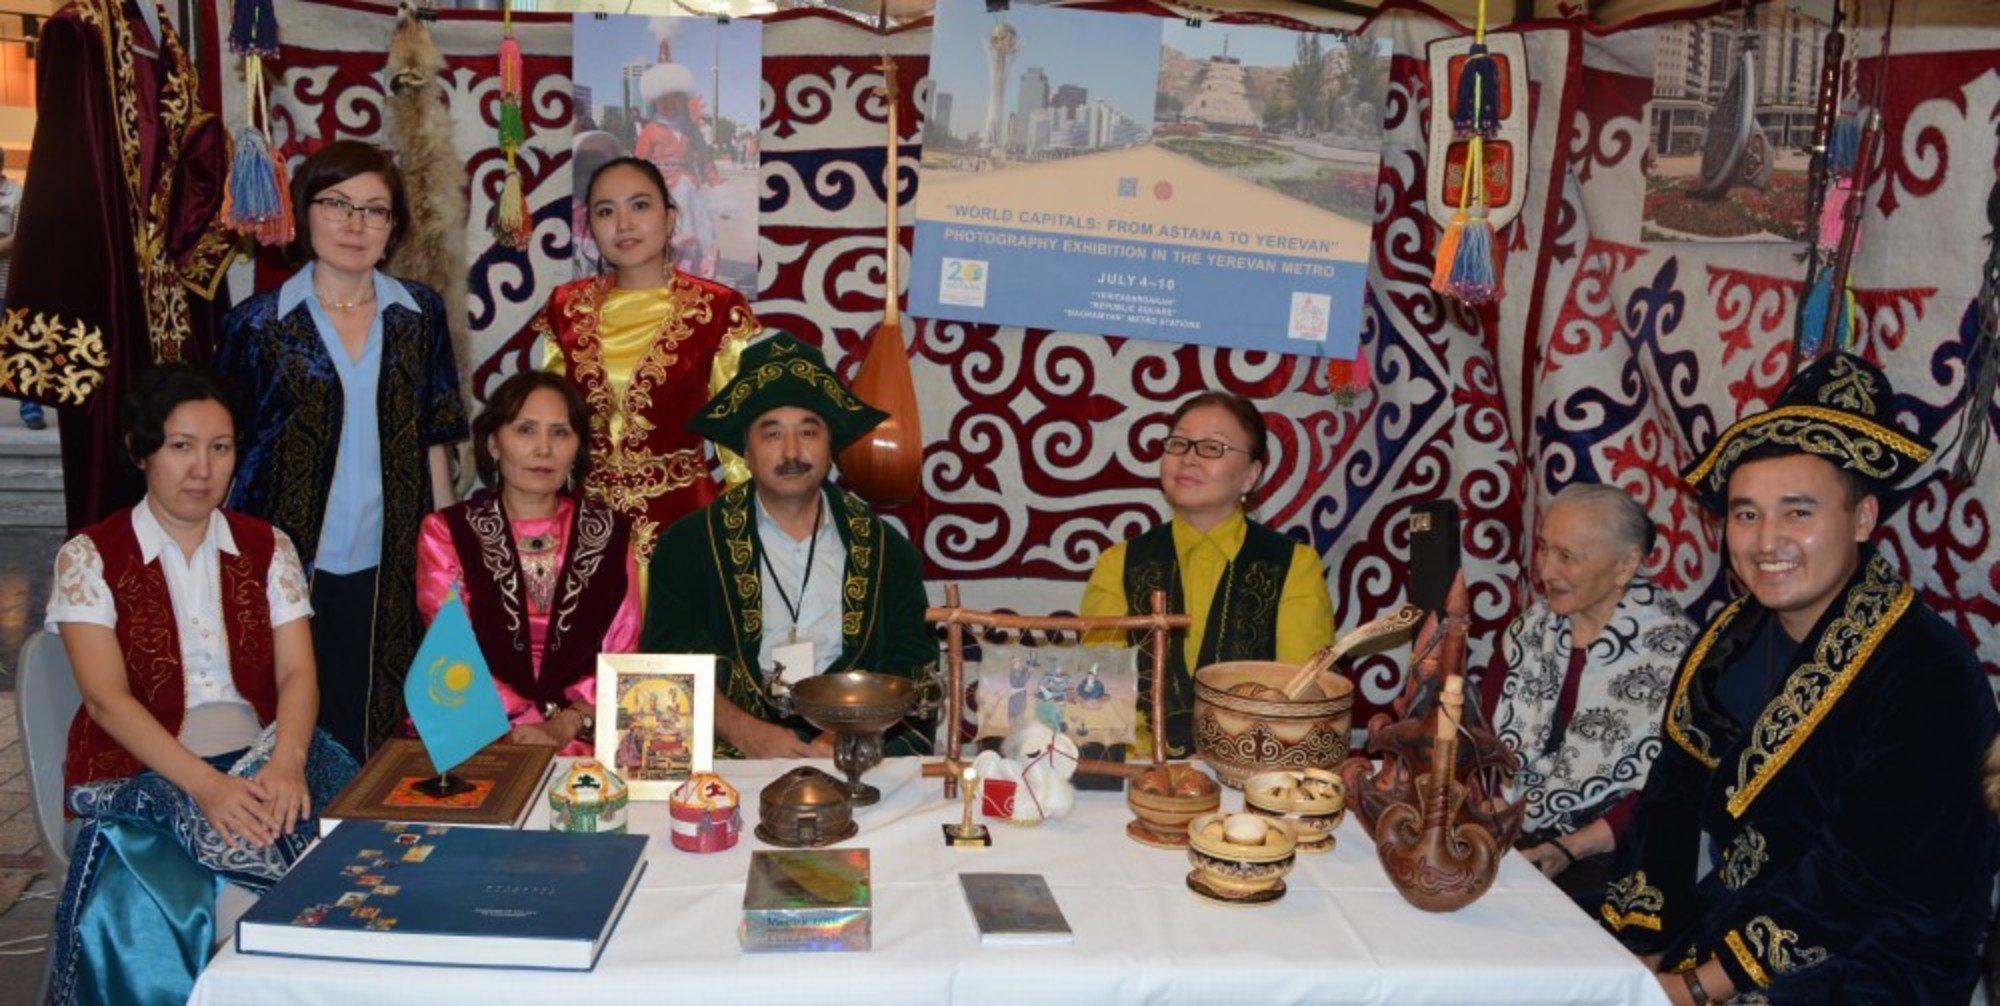 Казахскую национальную одежду показали на фестивале в Ереване